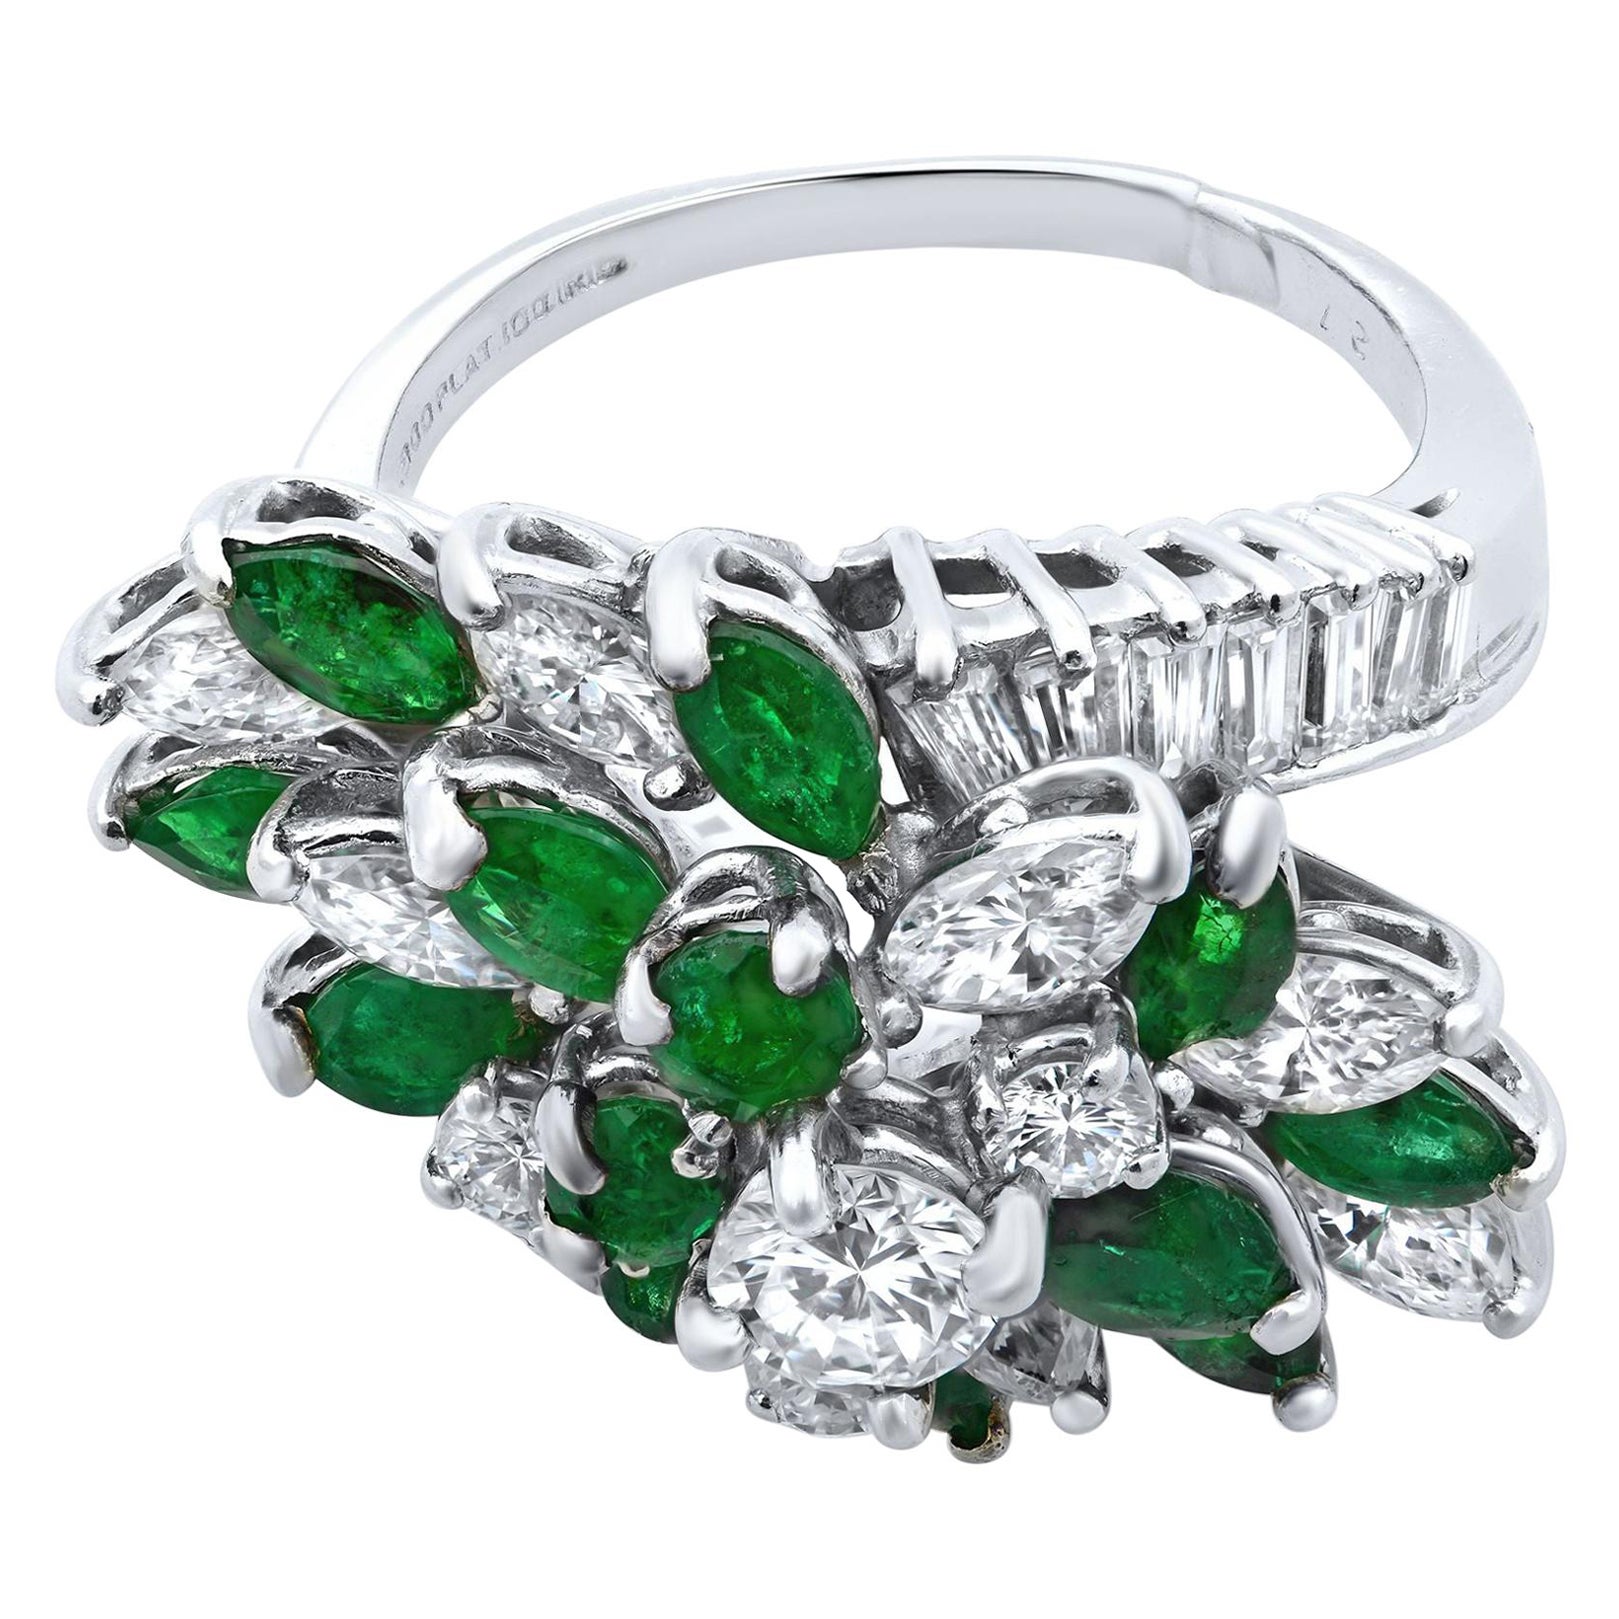 Antique Diamond Green Emerald Cocktail Ring in Platinum